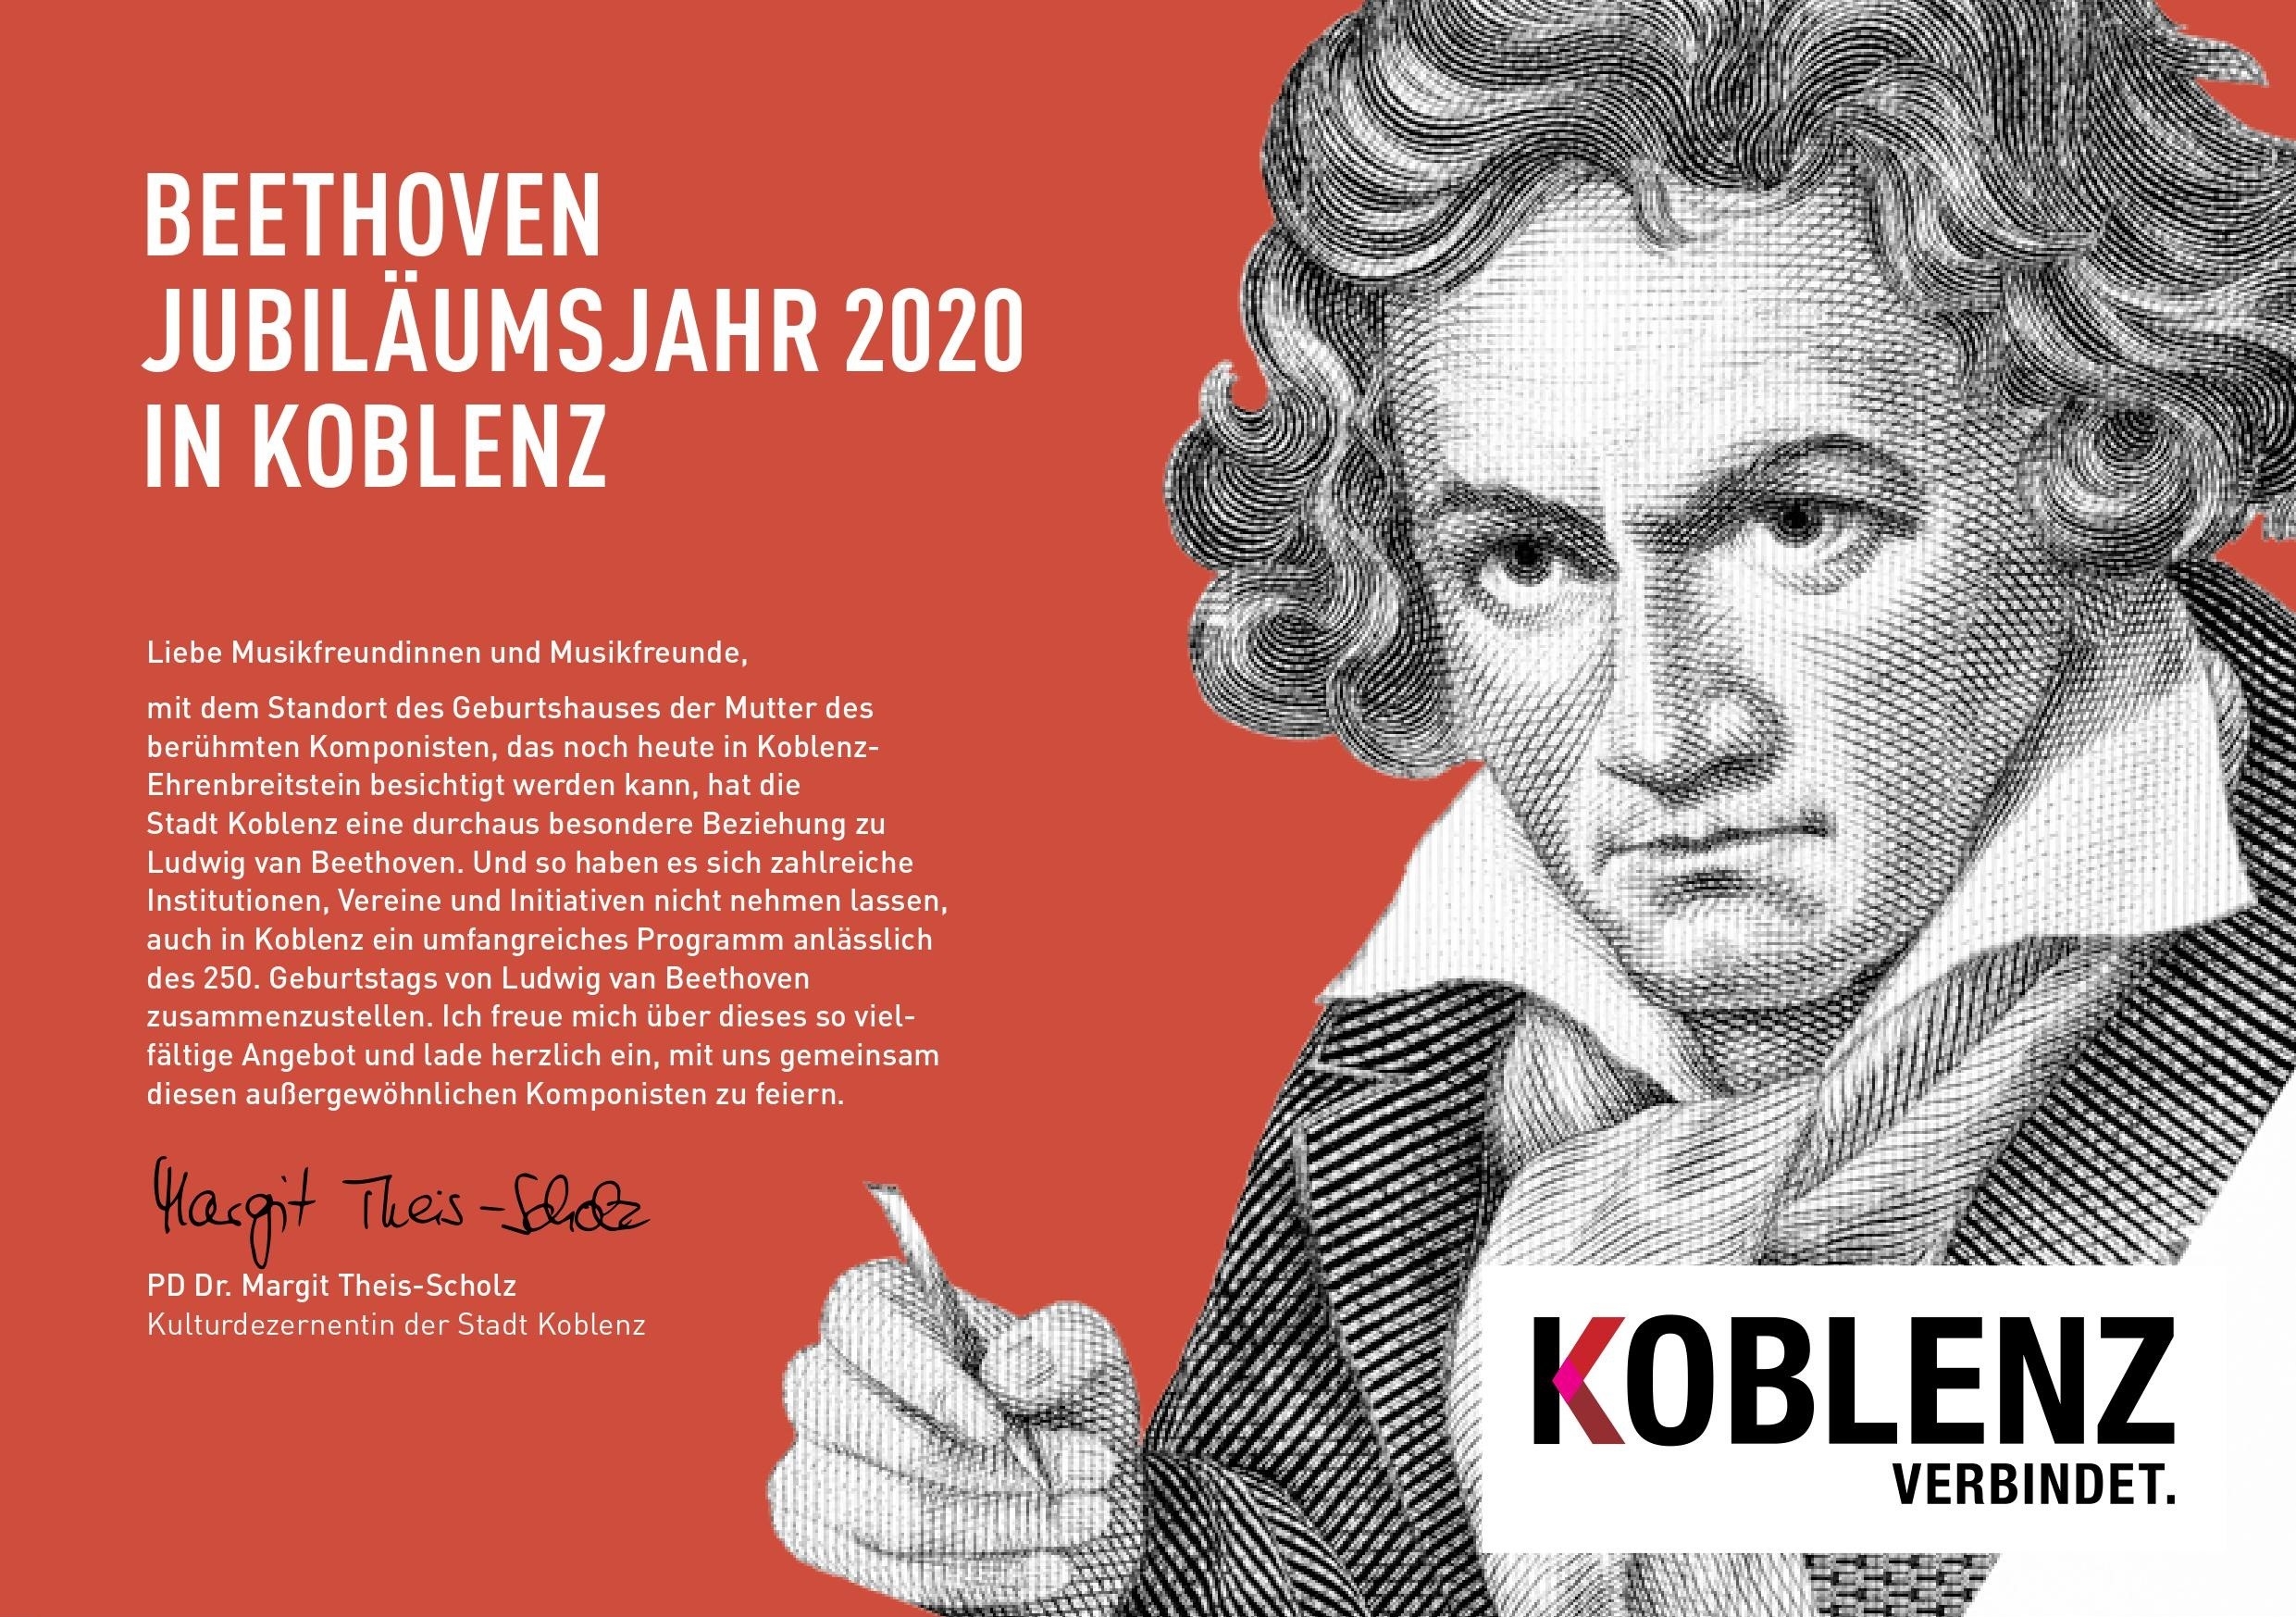 Beethoven im Schwarz-Weiß-Portrait auf rotem Hintergrund